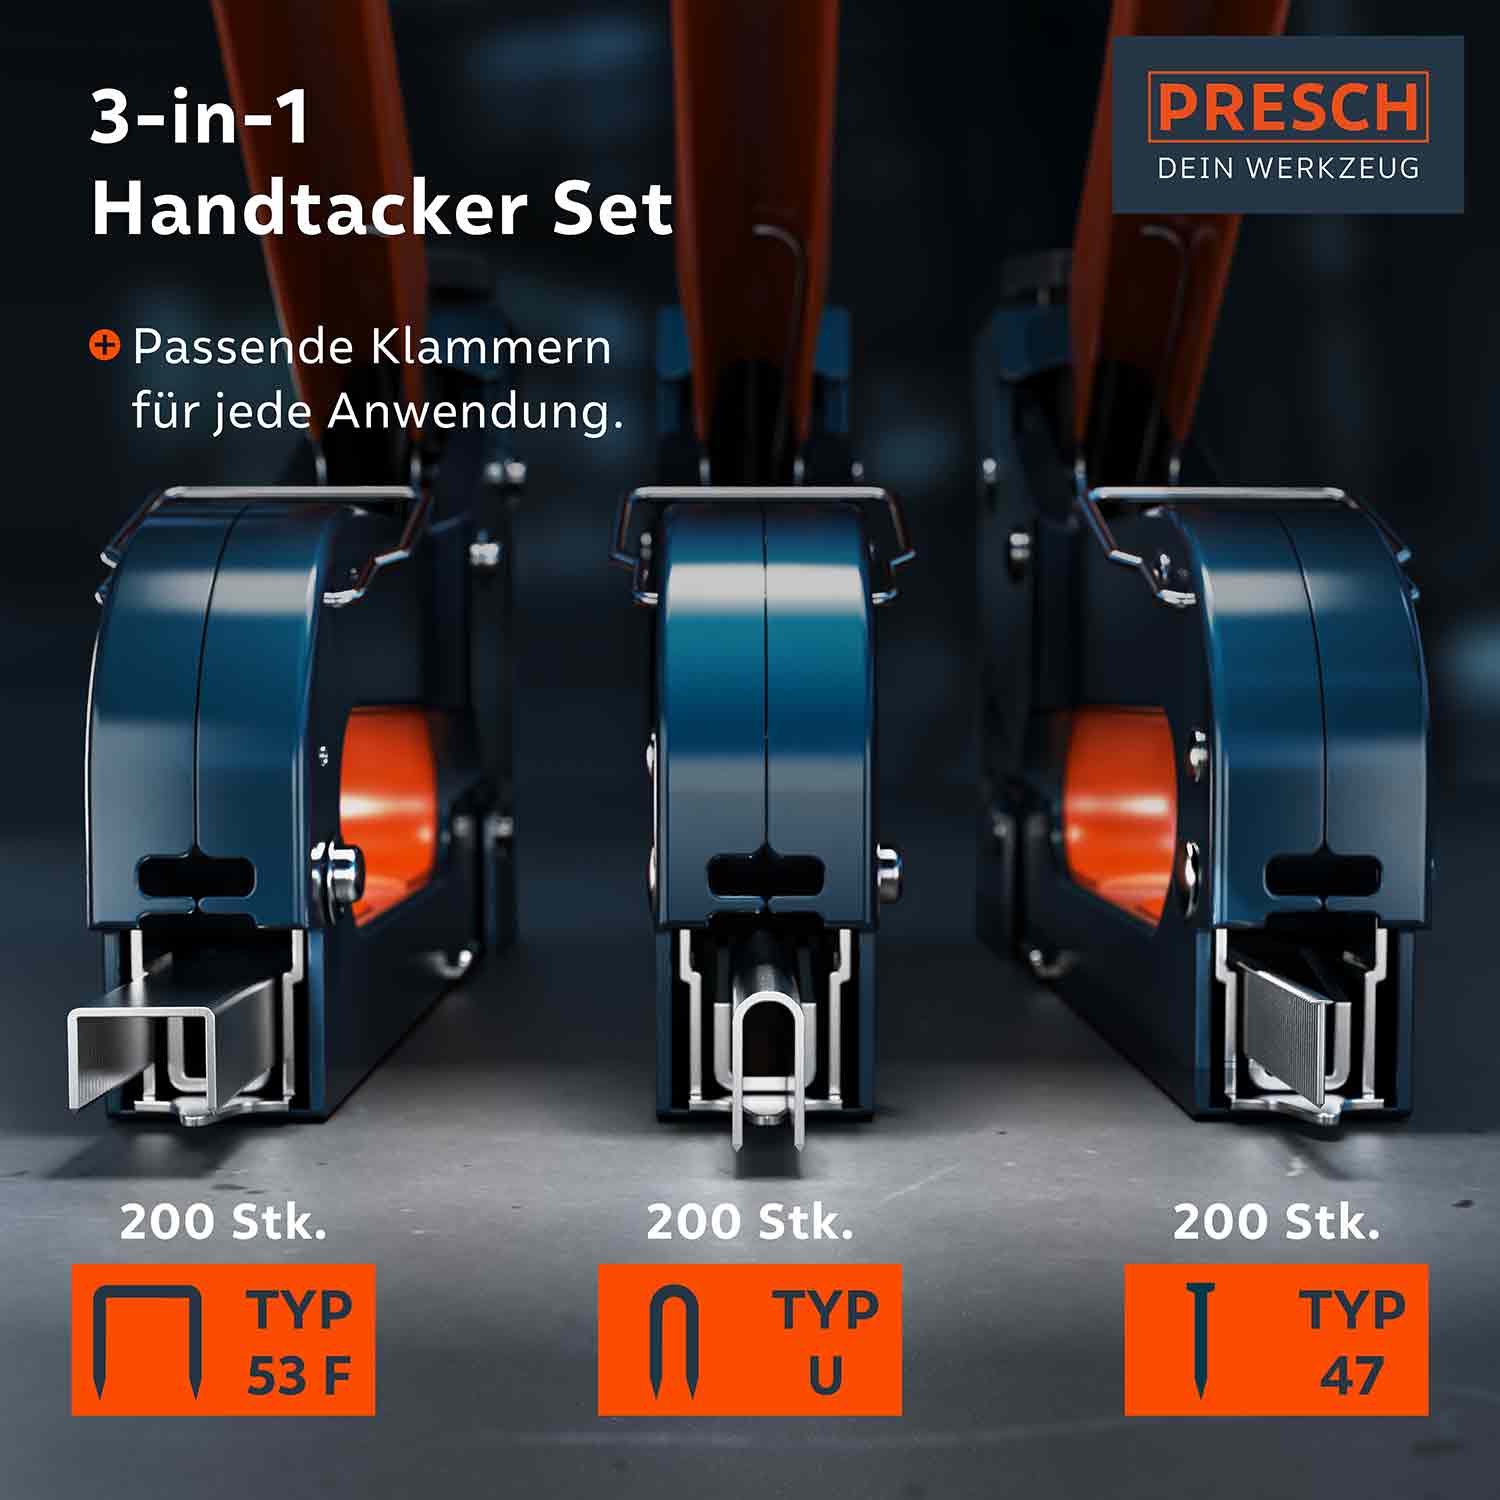 PRESCH 3-in-1 Handtacker Set mit verschiedenen Klammertypen für Heimwerkerarbeiten und Befestigungsaufgaben.